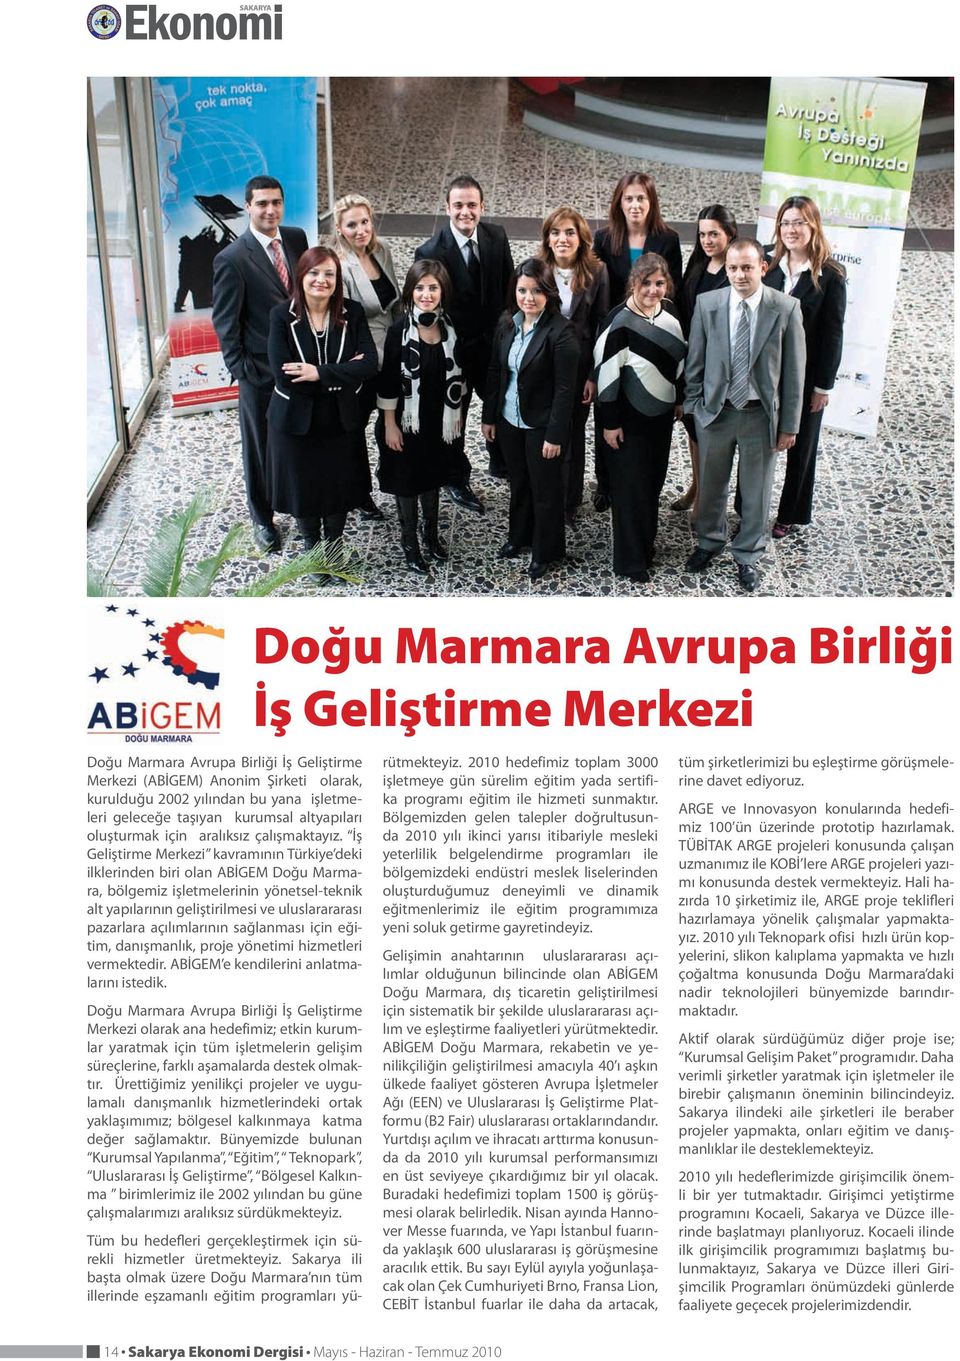 İş Geliştirme Merkezi kavramının Türkiye deki ilklerinden biri olan ABİGEM Doğu Marmara, bölgemiz işletmelerinin yönetsel-teknik alt yapılarının geliştirilmesi ve uluslarararası pazarlara